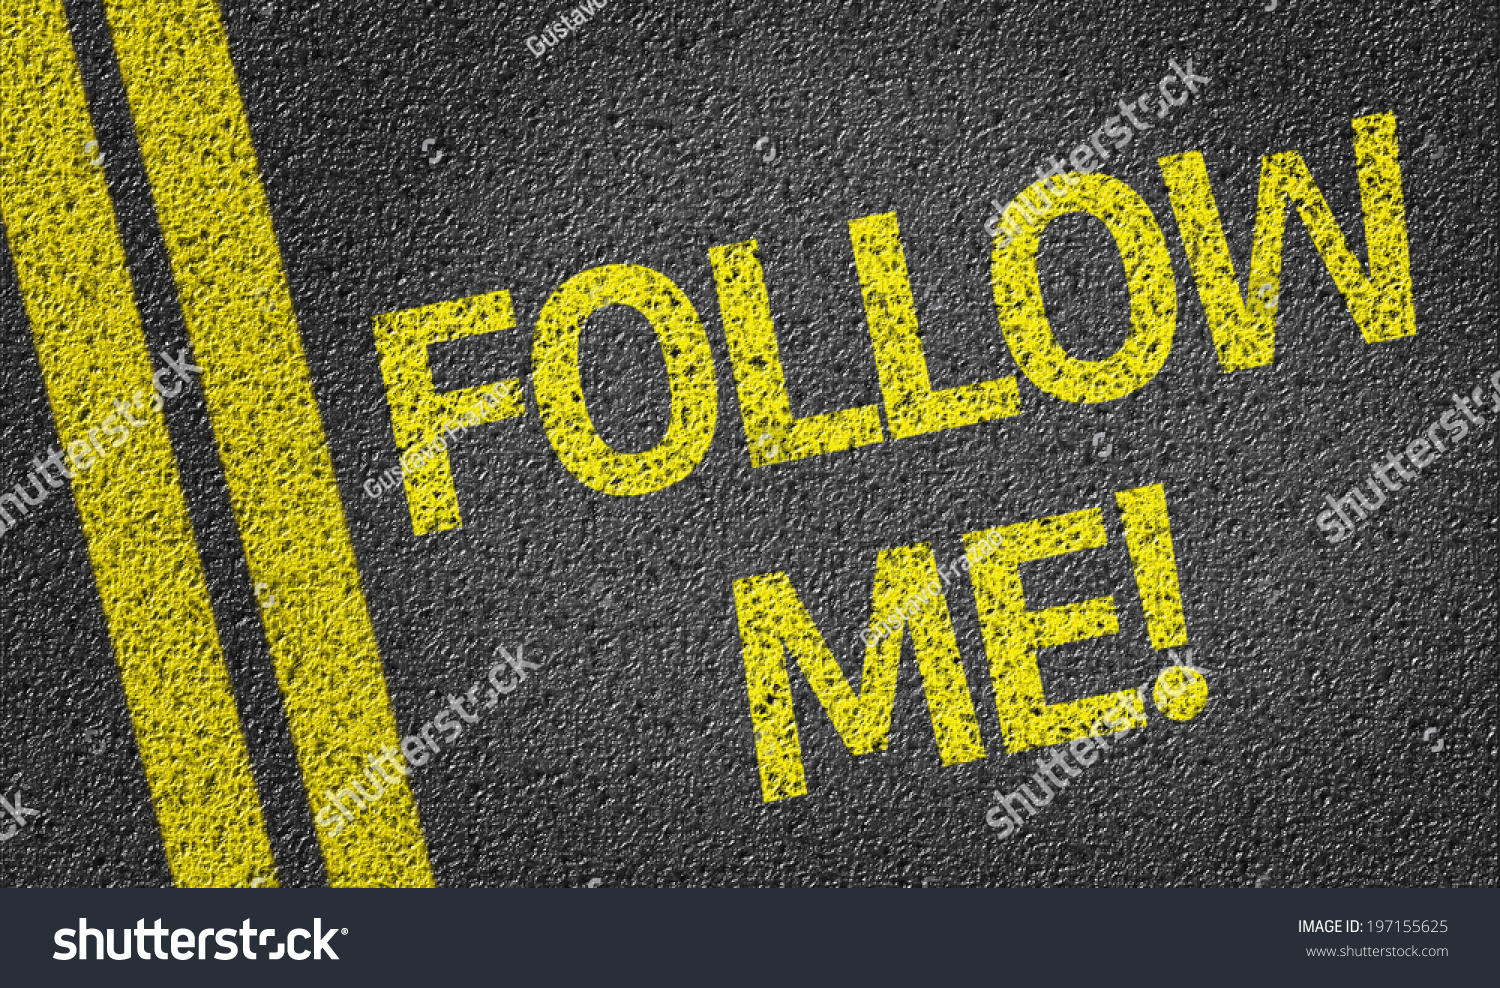 Включи in my. Надпись follow. Логотип follow me. Следуй за мной надпись. Follow картинка.